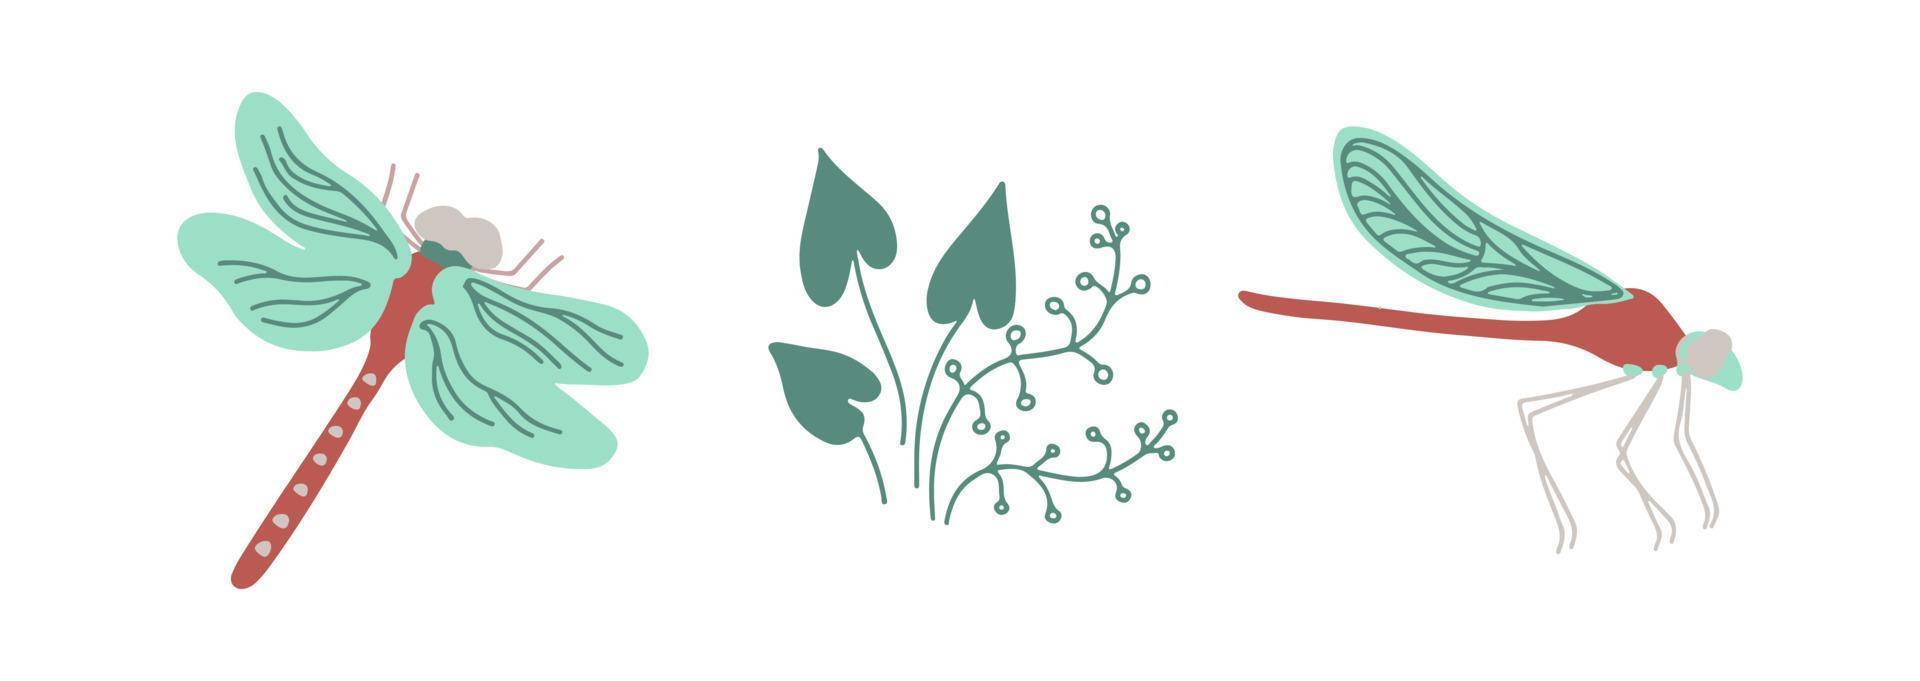 libélulas topo Visão e lado Visão com pantanal plantas isoalted em branco fundo. mão desenhado vetor ilustração.